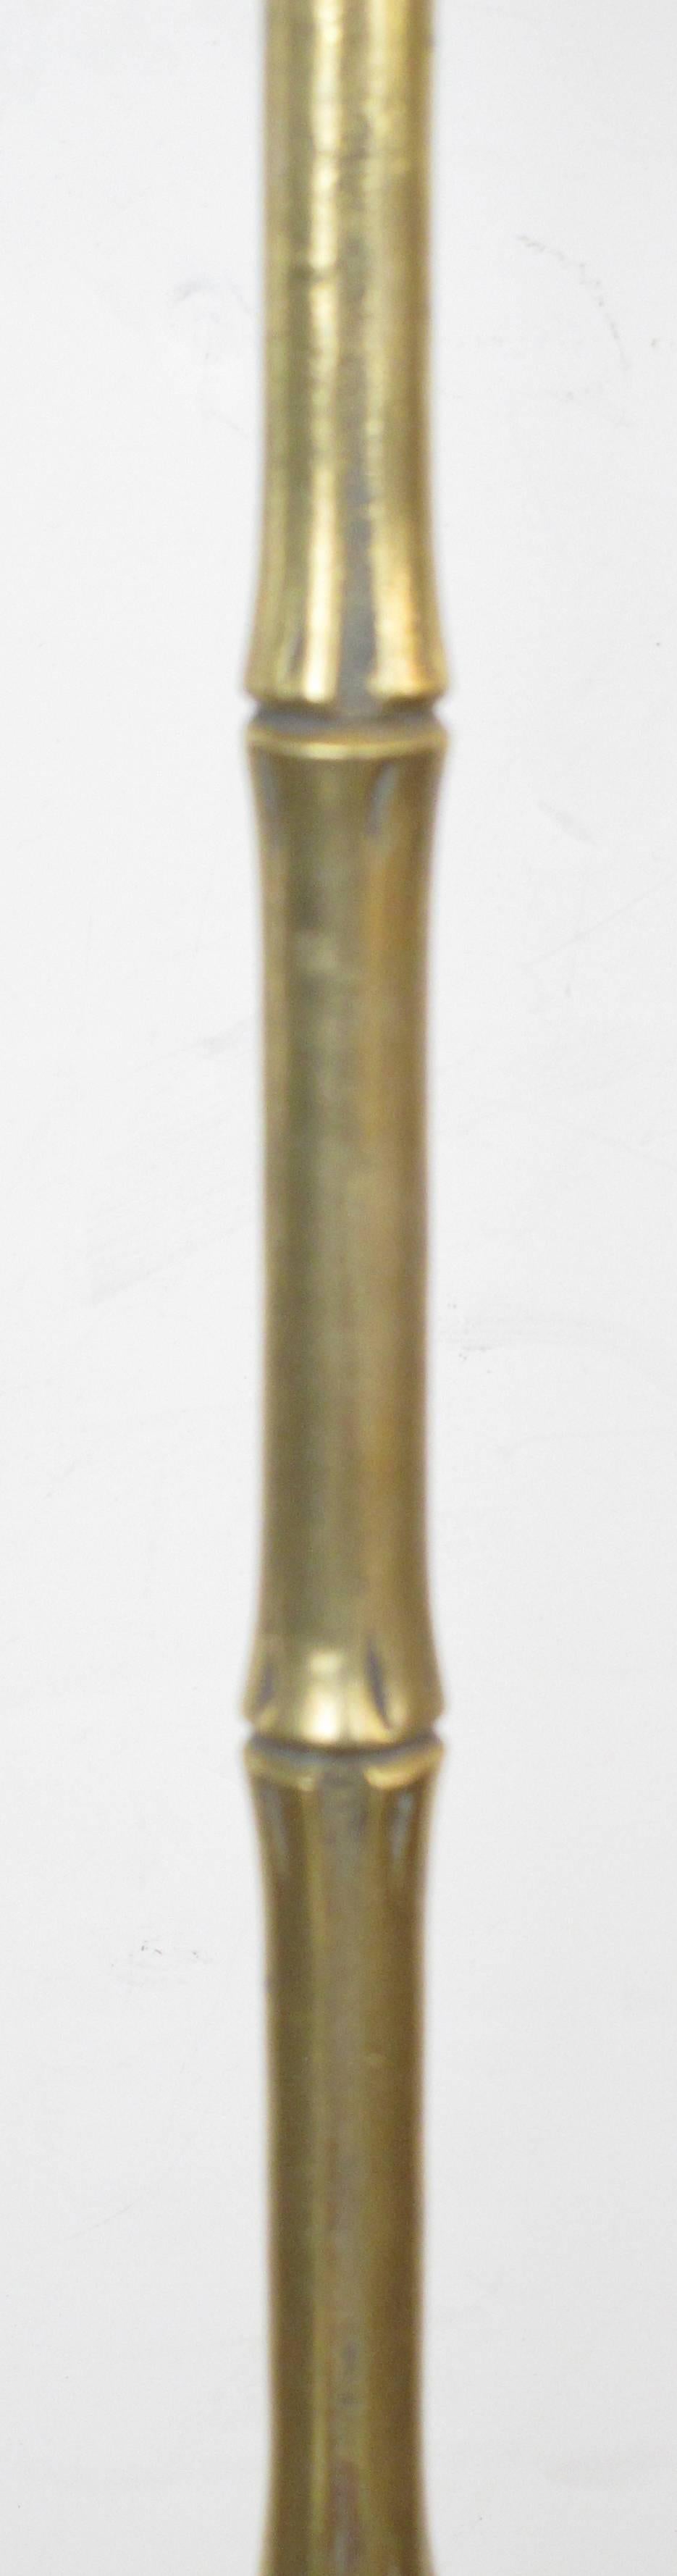 Élégant lampadaire en laiton faux bambou de la Maison Baguès datant des années 1960 ; le support élancé en laiton faux bambou repose sur une base circulaire en bronze rocailleux avec des feuilles en écailles.